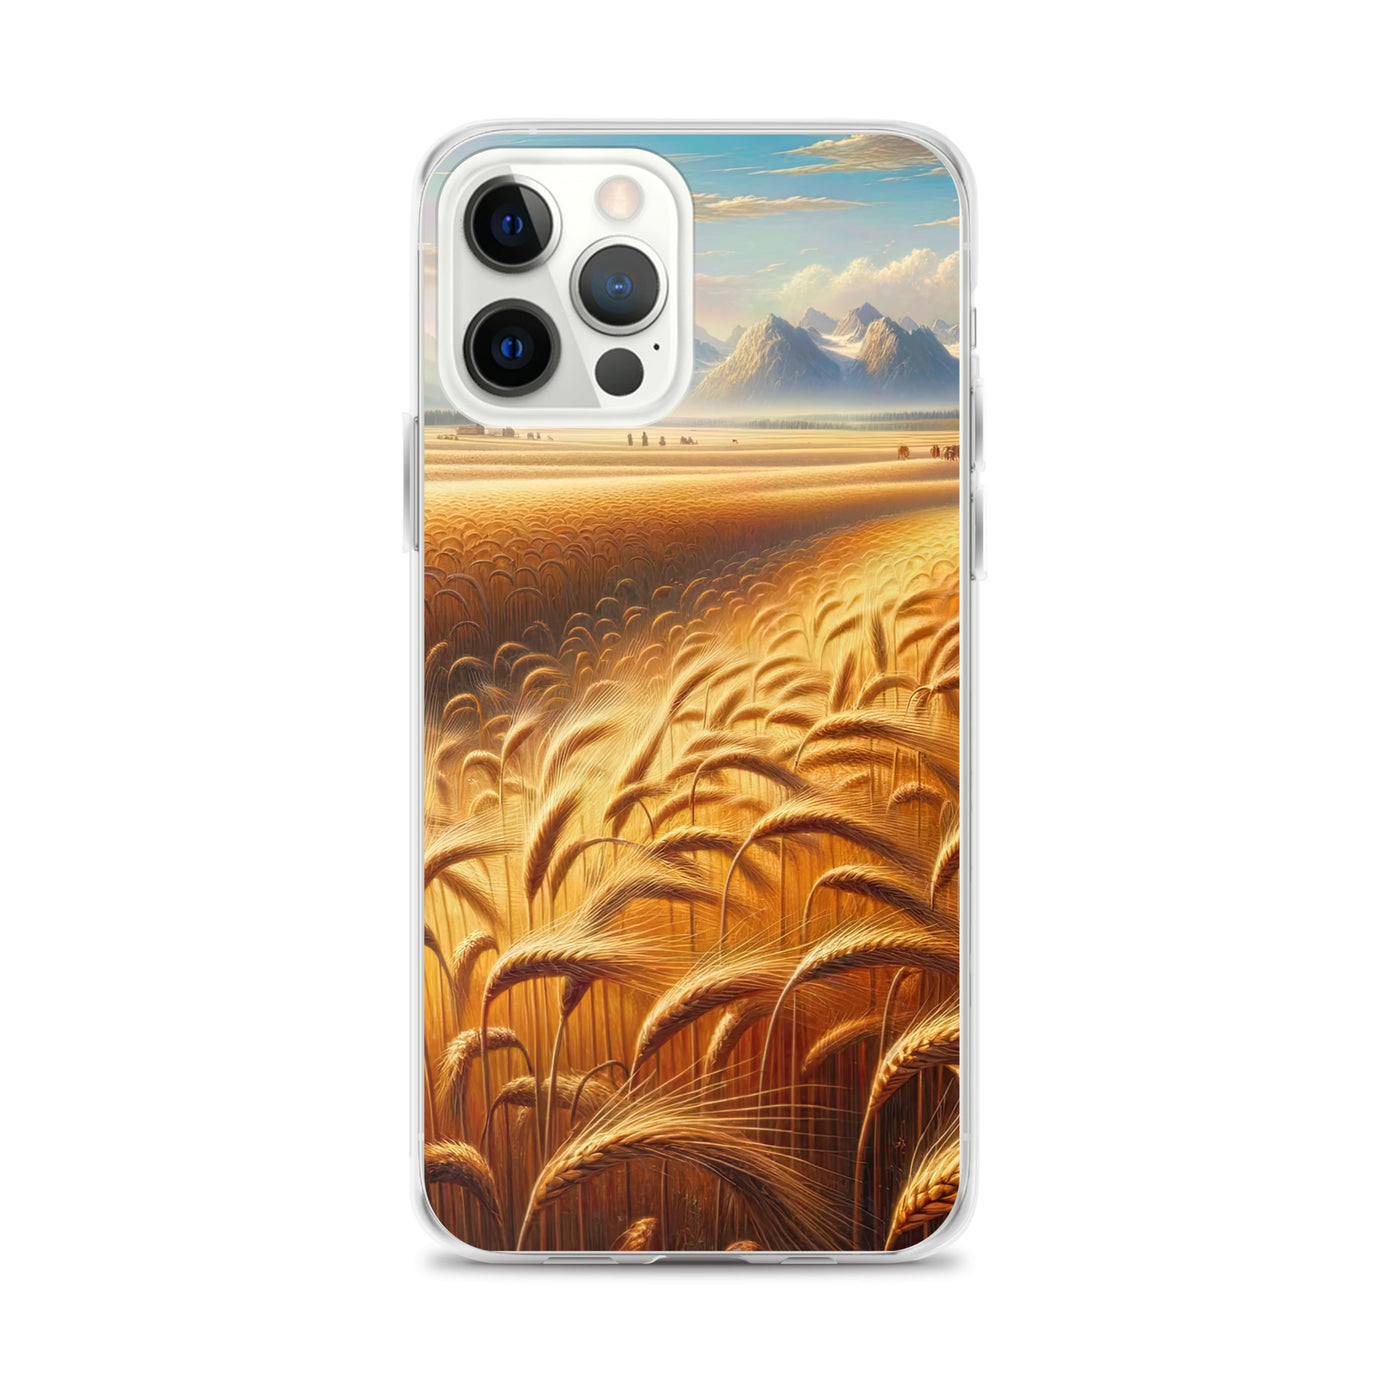 Ölgemälde eines bayerischen Weizenfeldes, endlose goldene Halme (TR) - iPhone Schutzhülle (durchsichtig) xxx yyy zzz iPhone 12 Pro Max